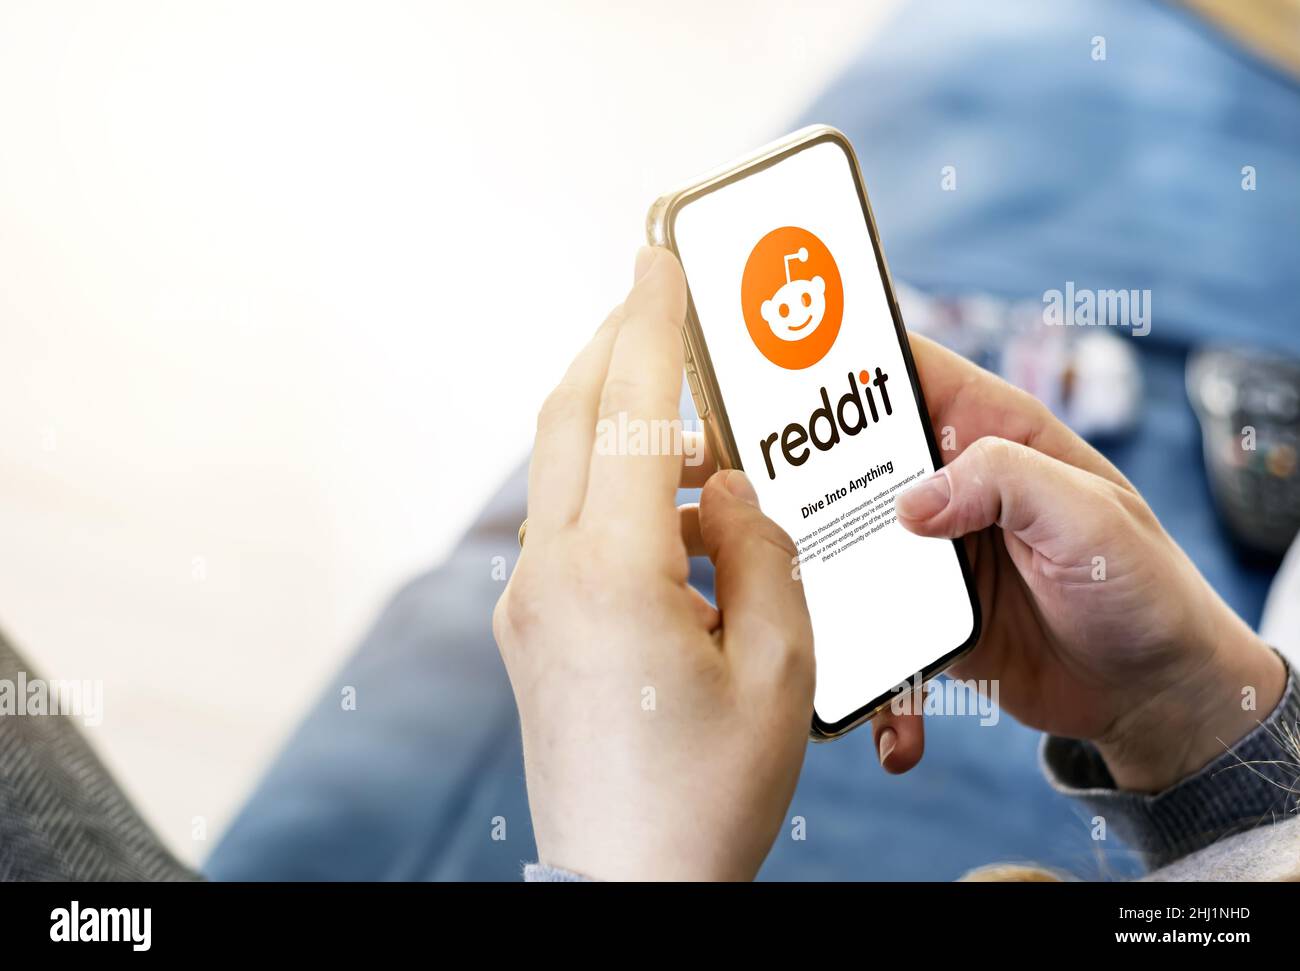 Rome, Italie, janvier 2022: Femme tenant un smartphone avec l'application mobile Reddit à l'écran.Reddit est une agrégation d'actualités sociales américaine et discute Banque D'Images